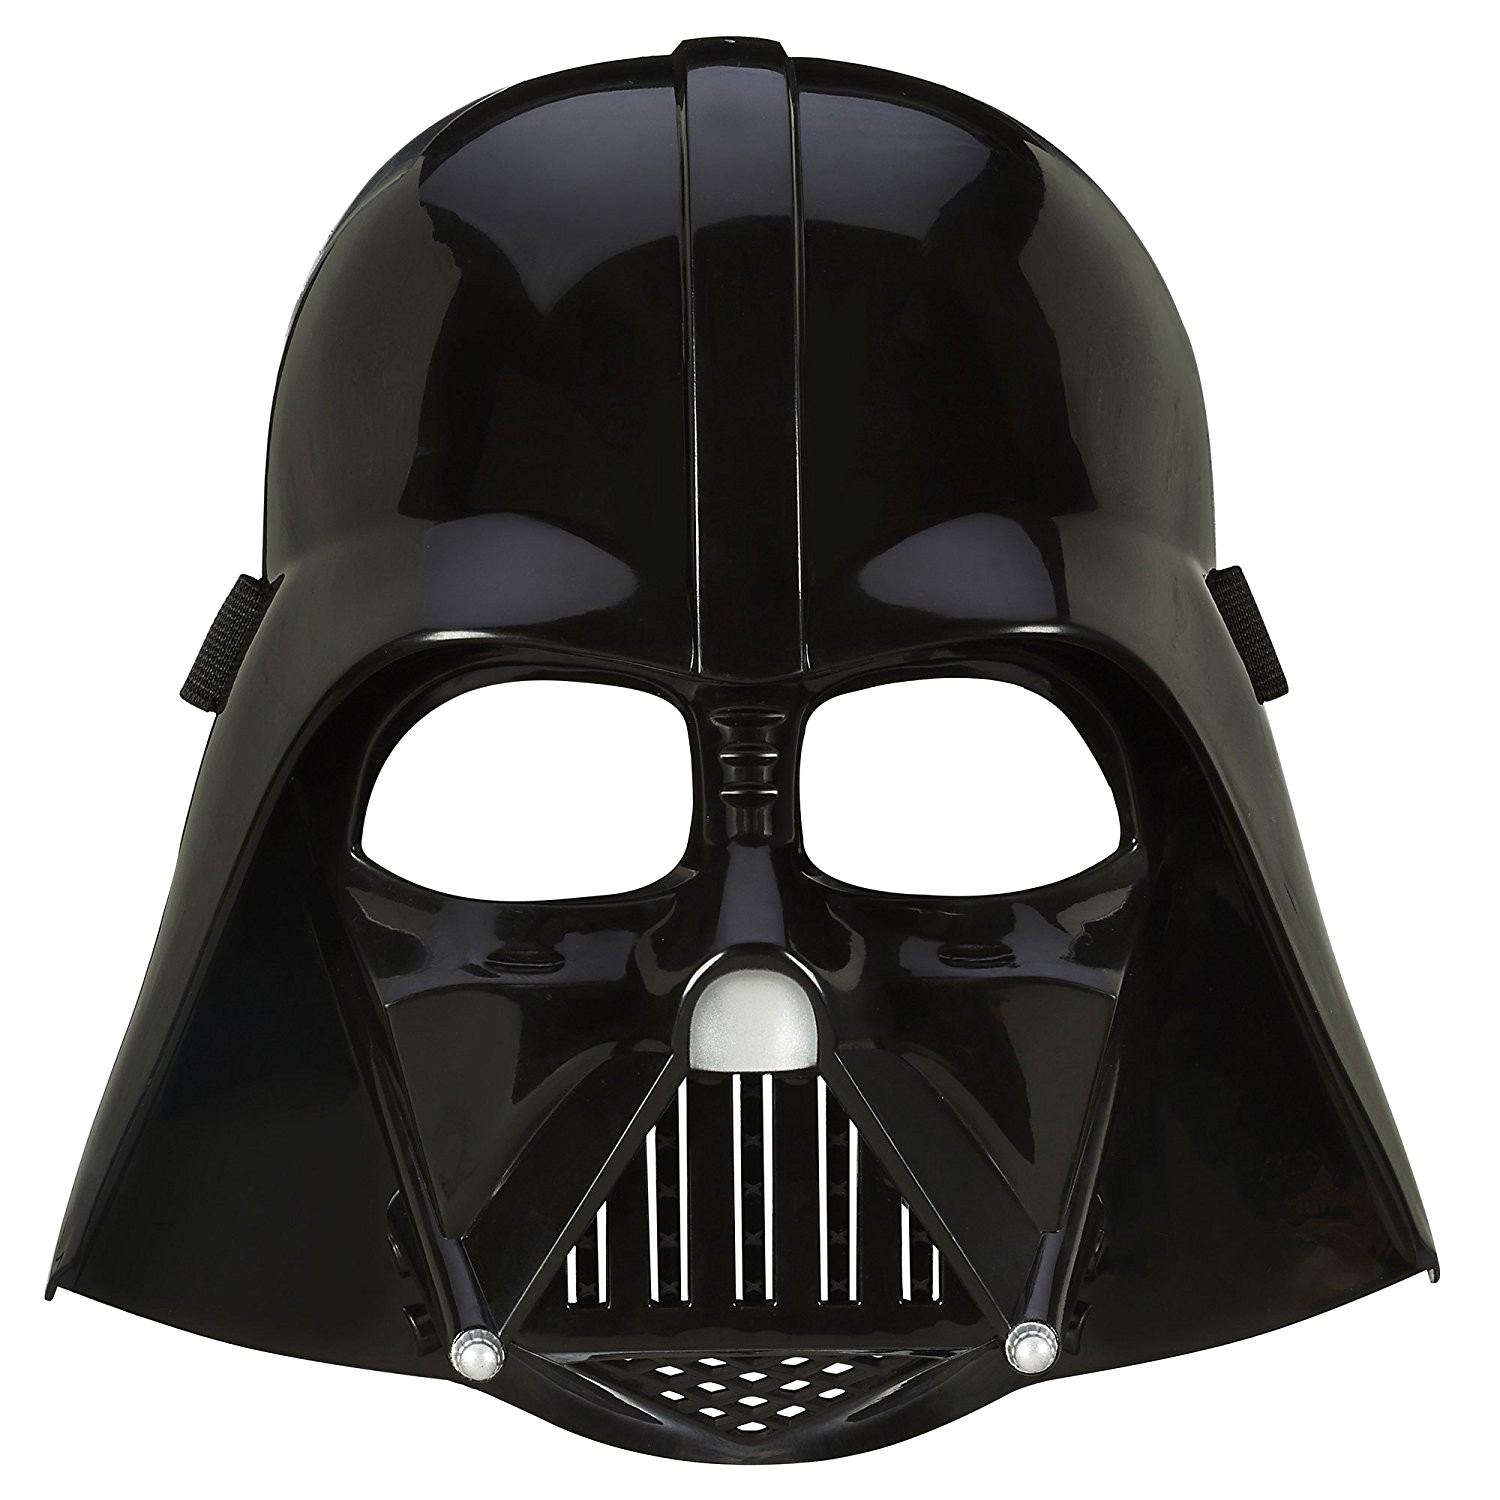 Darth Vader Star Wars PNG Transparent Image